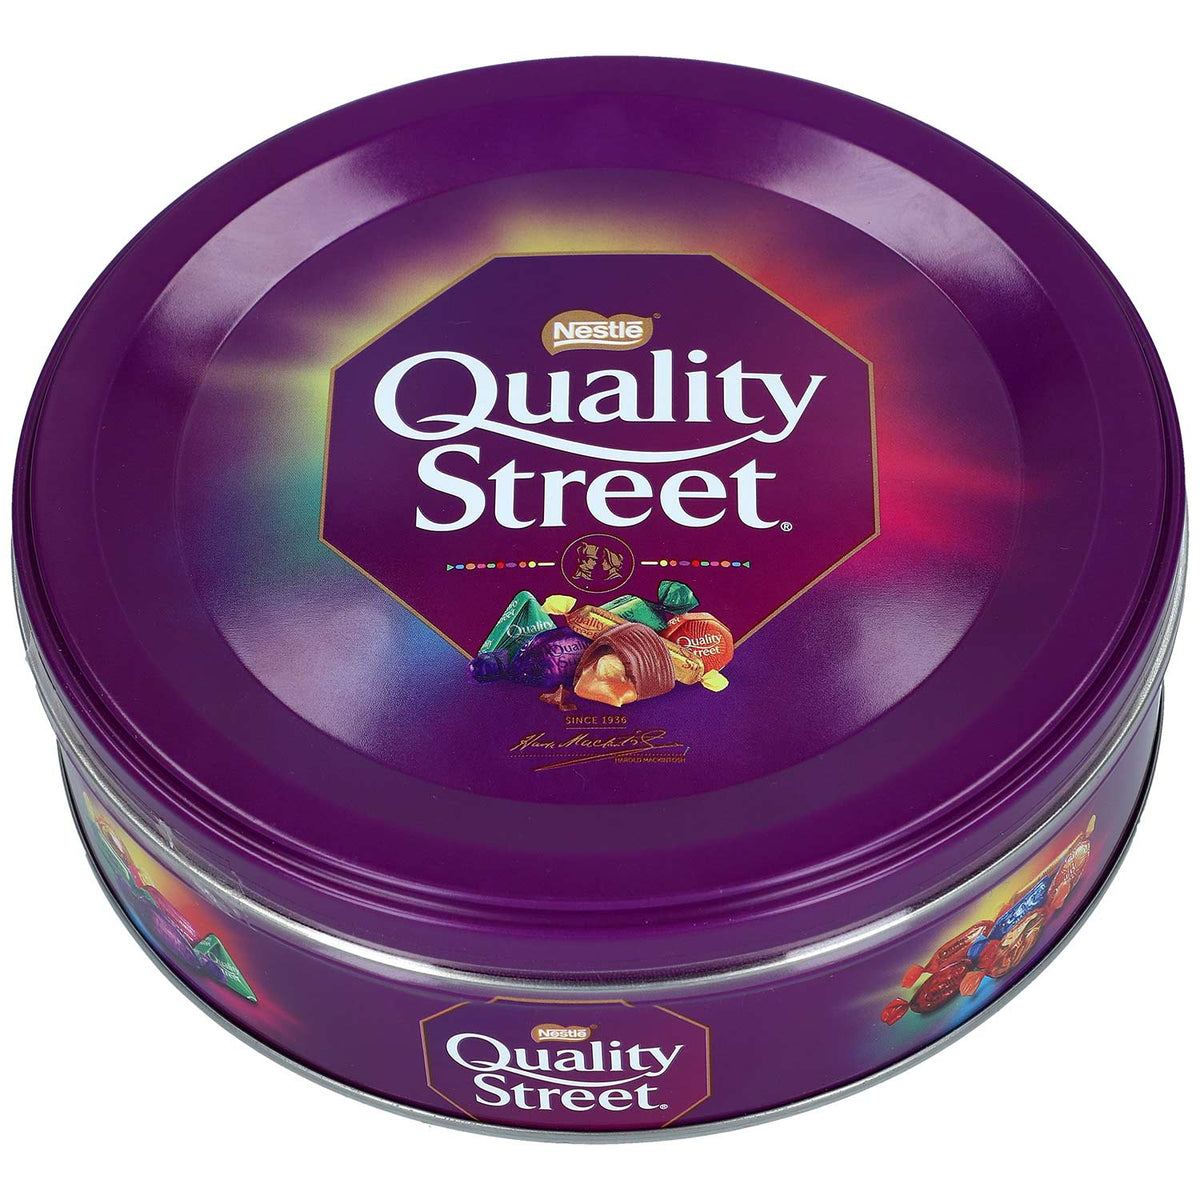 Quality Street - Nestlé - 480 g ℮